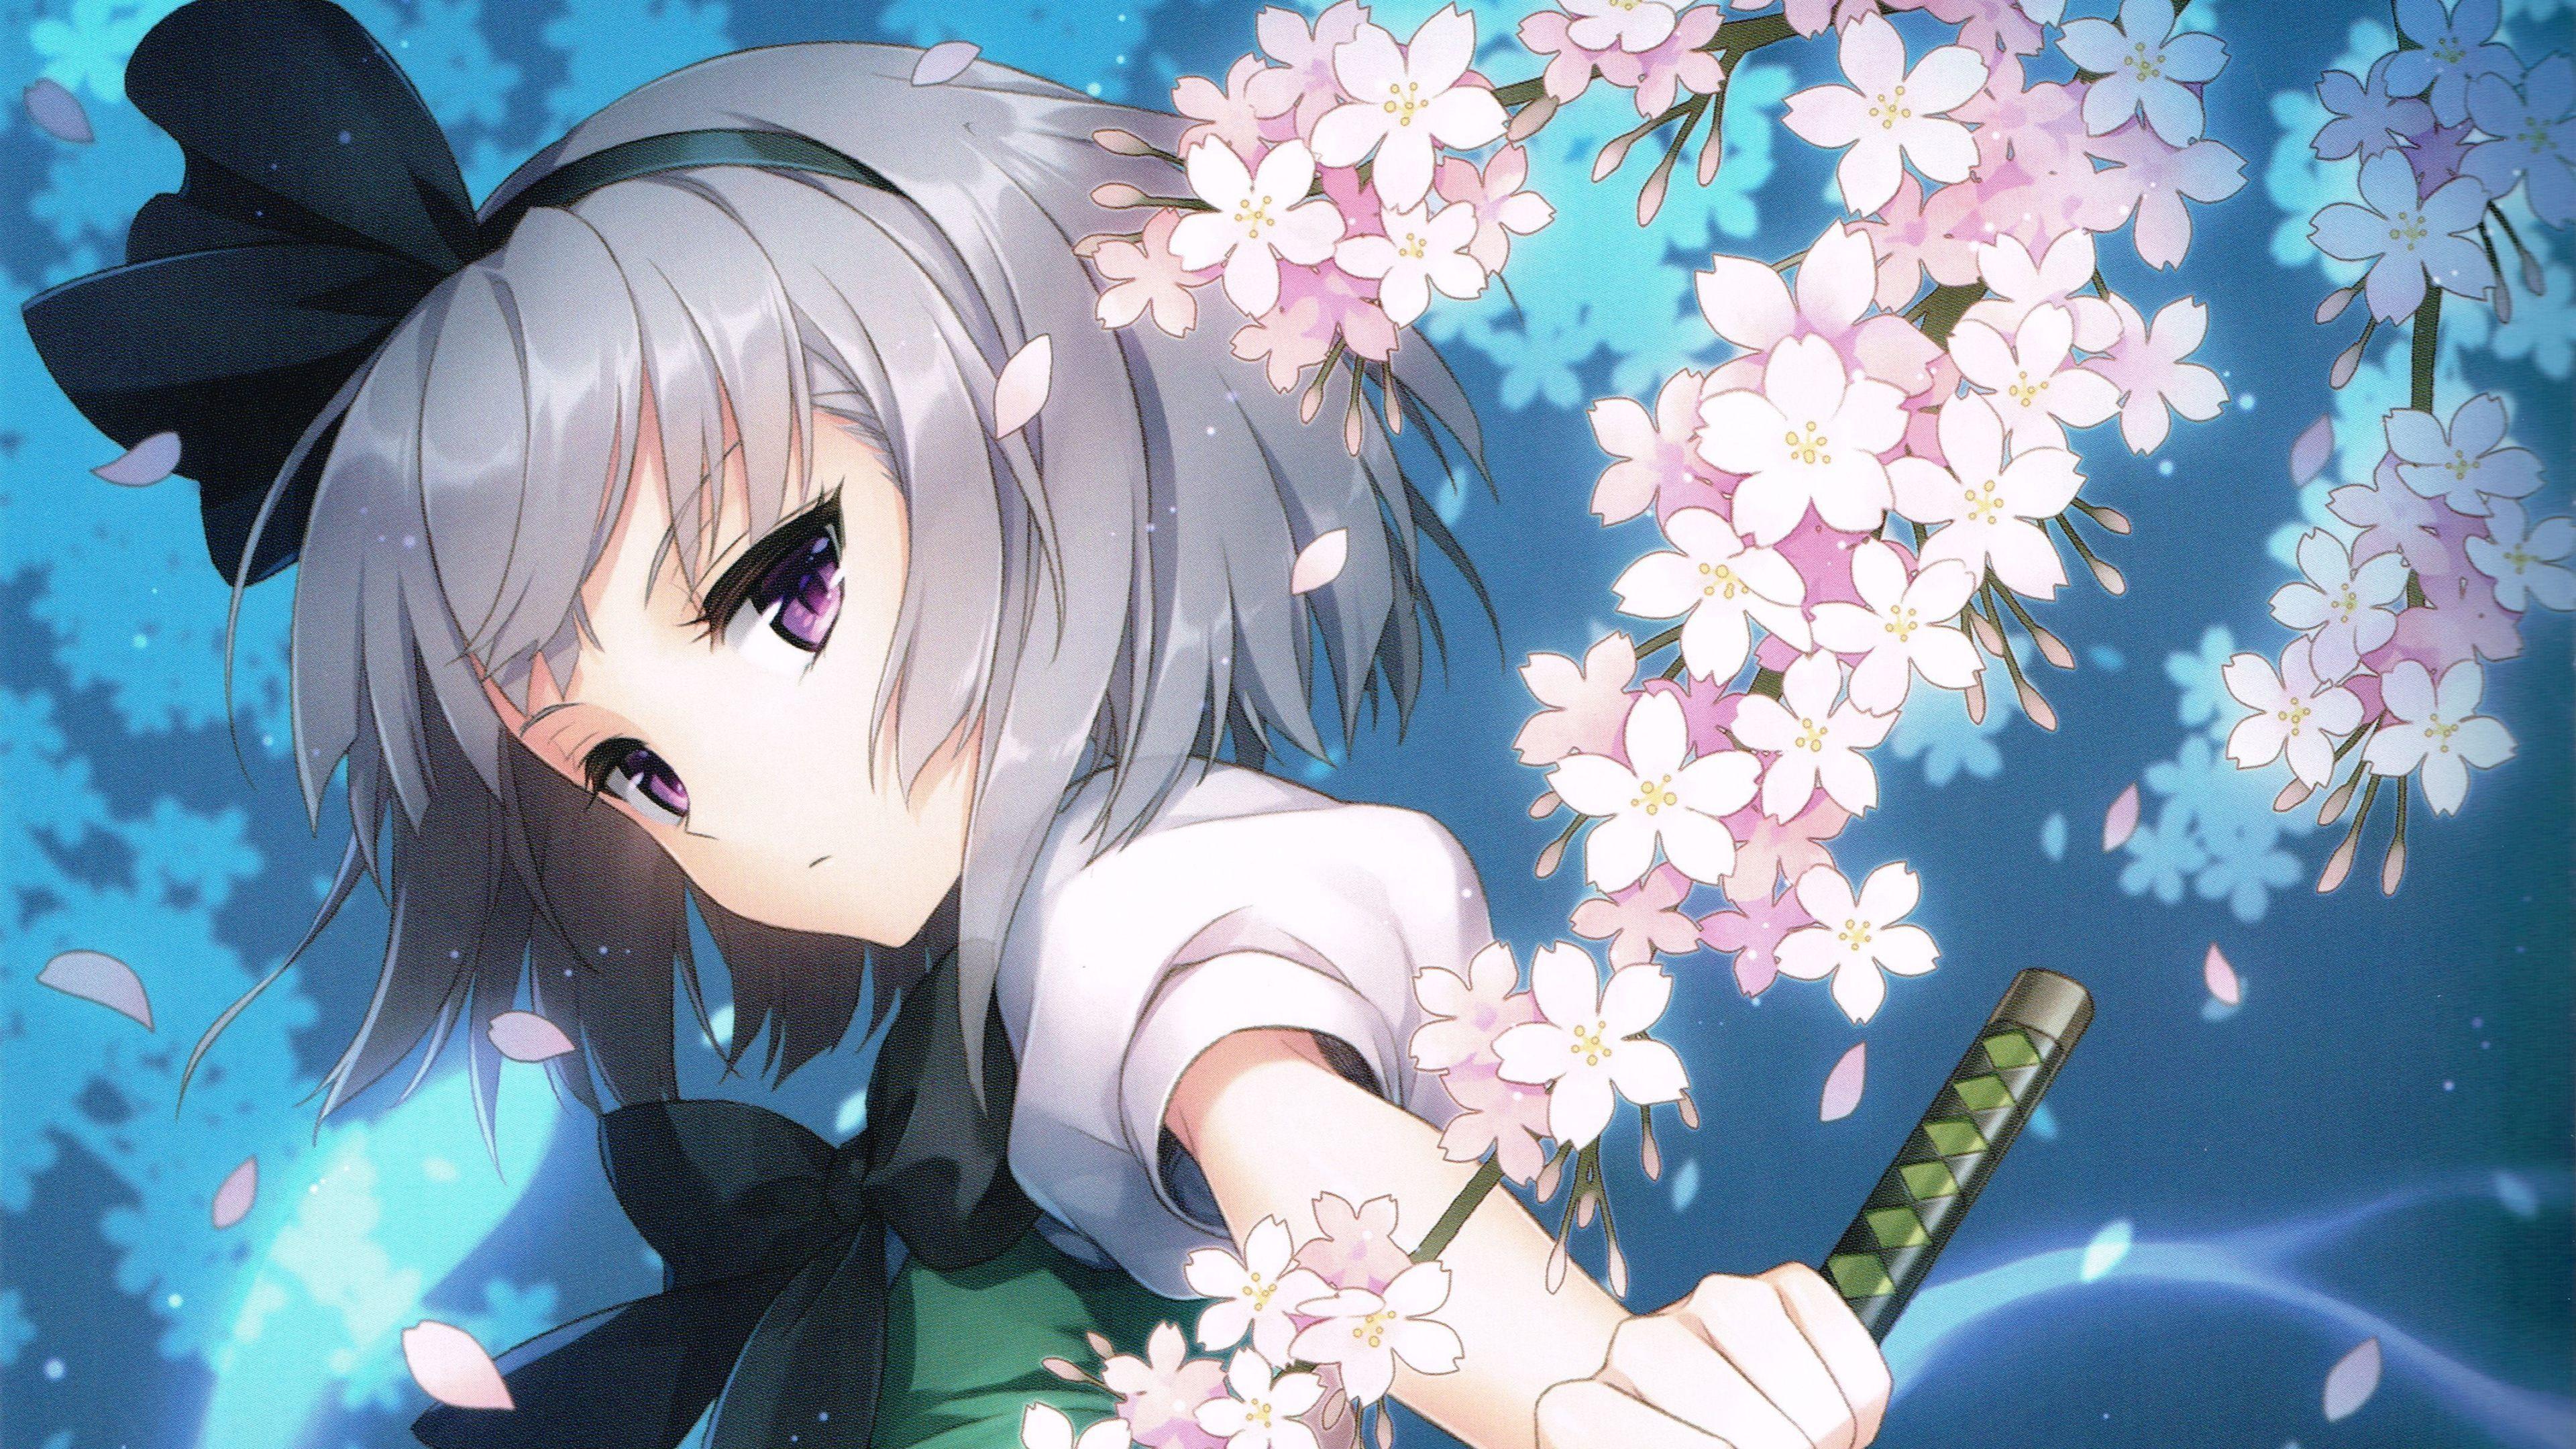 Anime Fantasy Girl 4K Wallpaper For Desktop Of Fantasy Anime